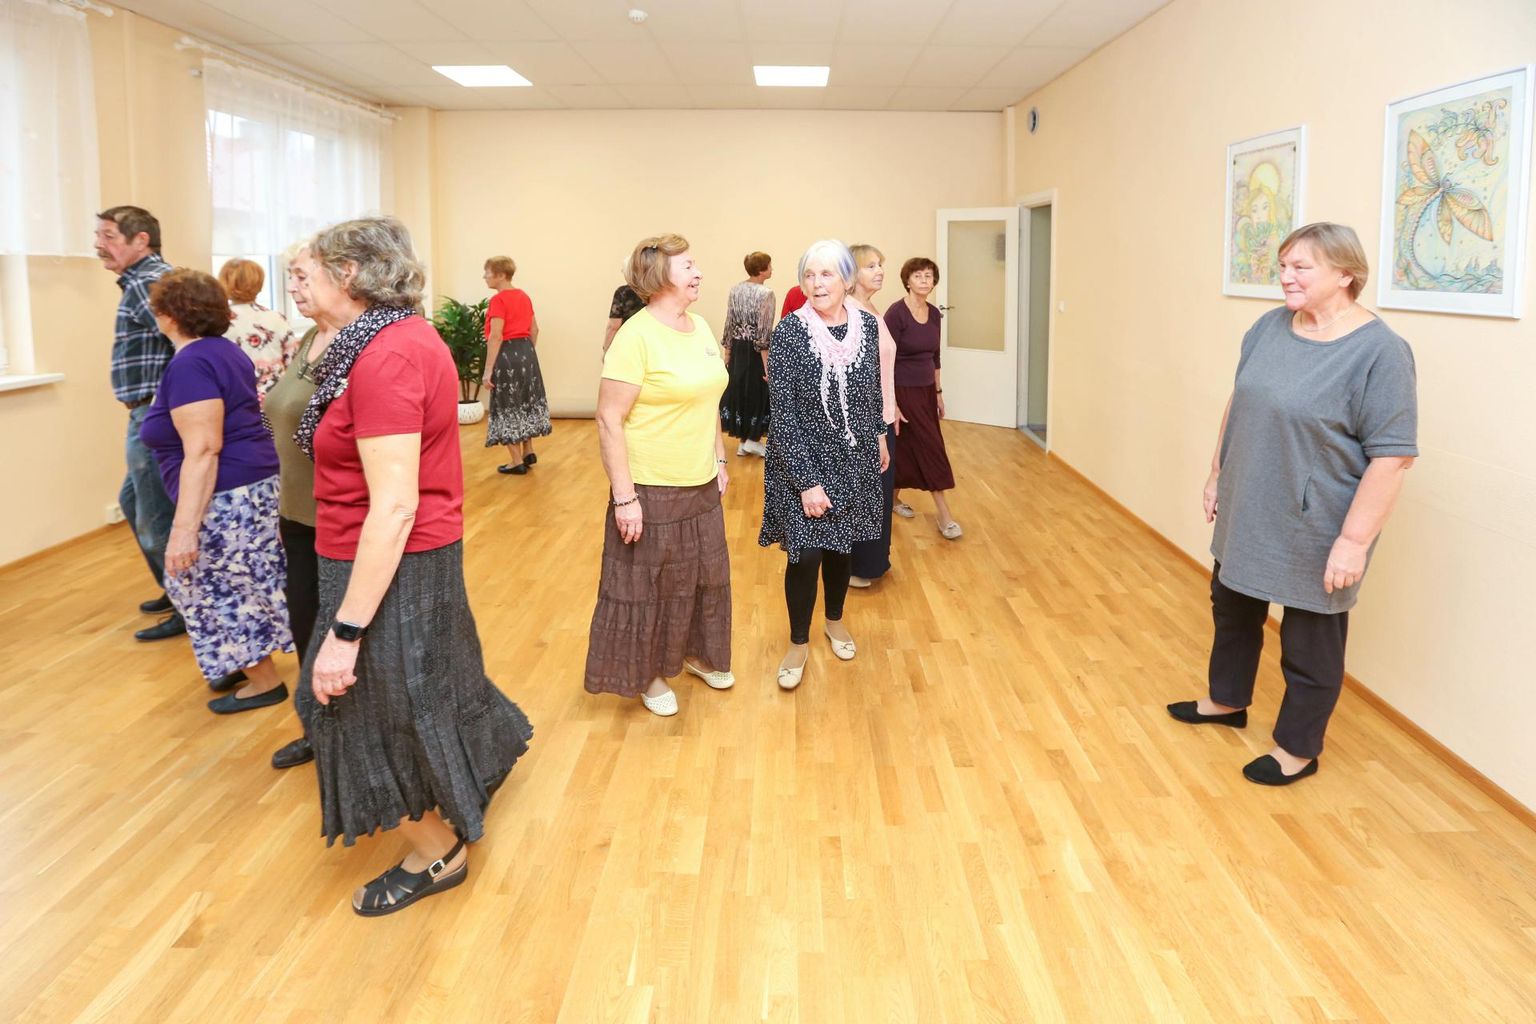 Võru pensionäride päevakeskuses tegutseb ka seenioride tantsurühm Hõbevalge, mida juhendab Jelena Nurk. Päevakeskuse juht Siiri Toomik (paremal) tõdes, et majas tegutsevates tantsuringides on kavade õppimine täies hoos.